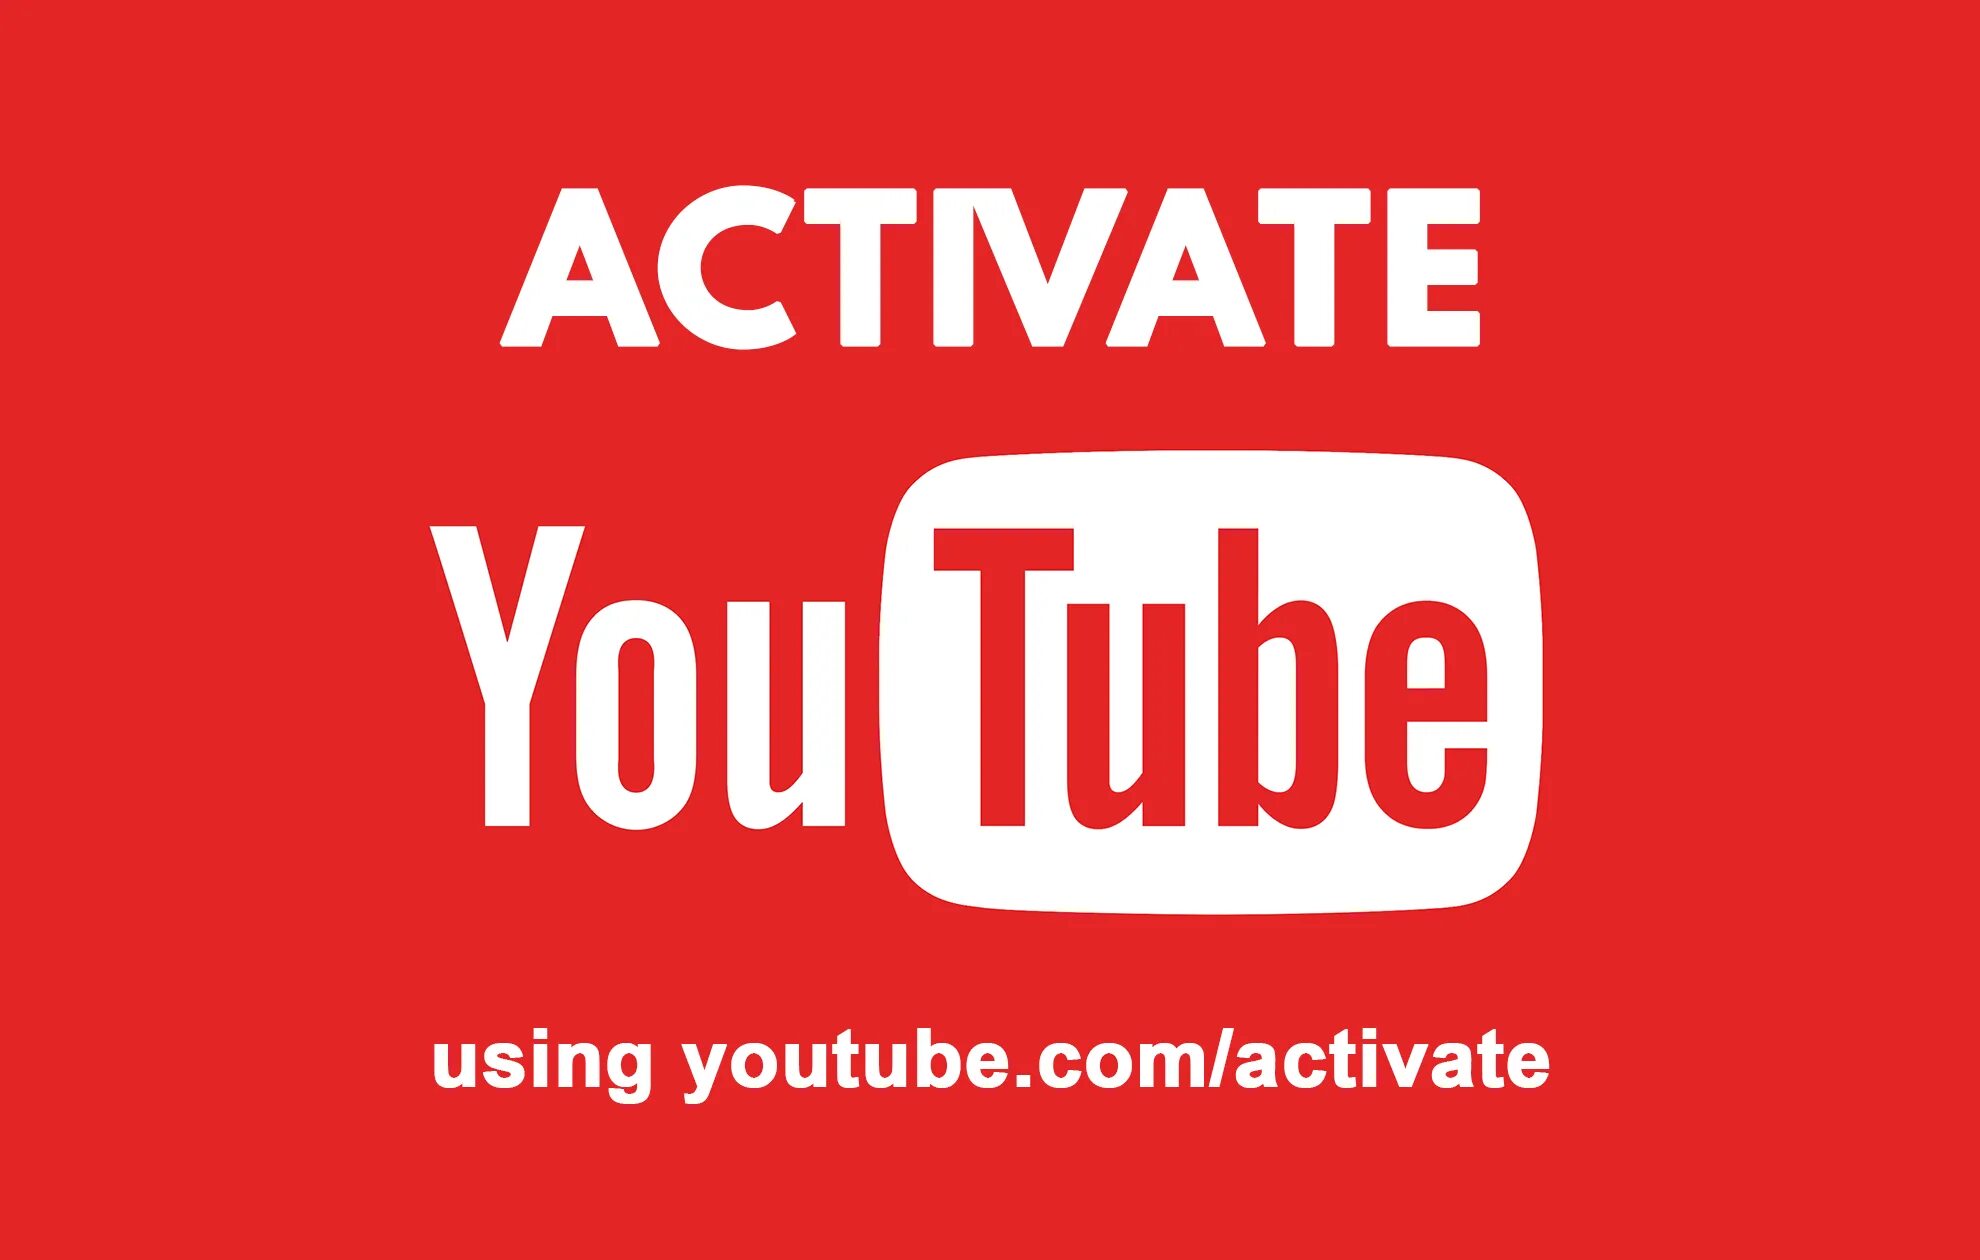 Youtube.com/activate. Ютуб.com activate. Ютуб активейт. Youtube активация.